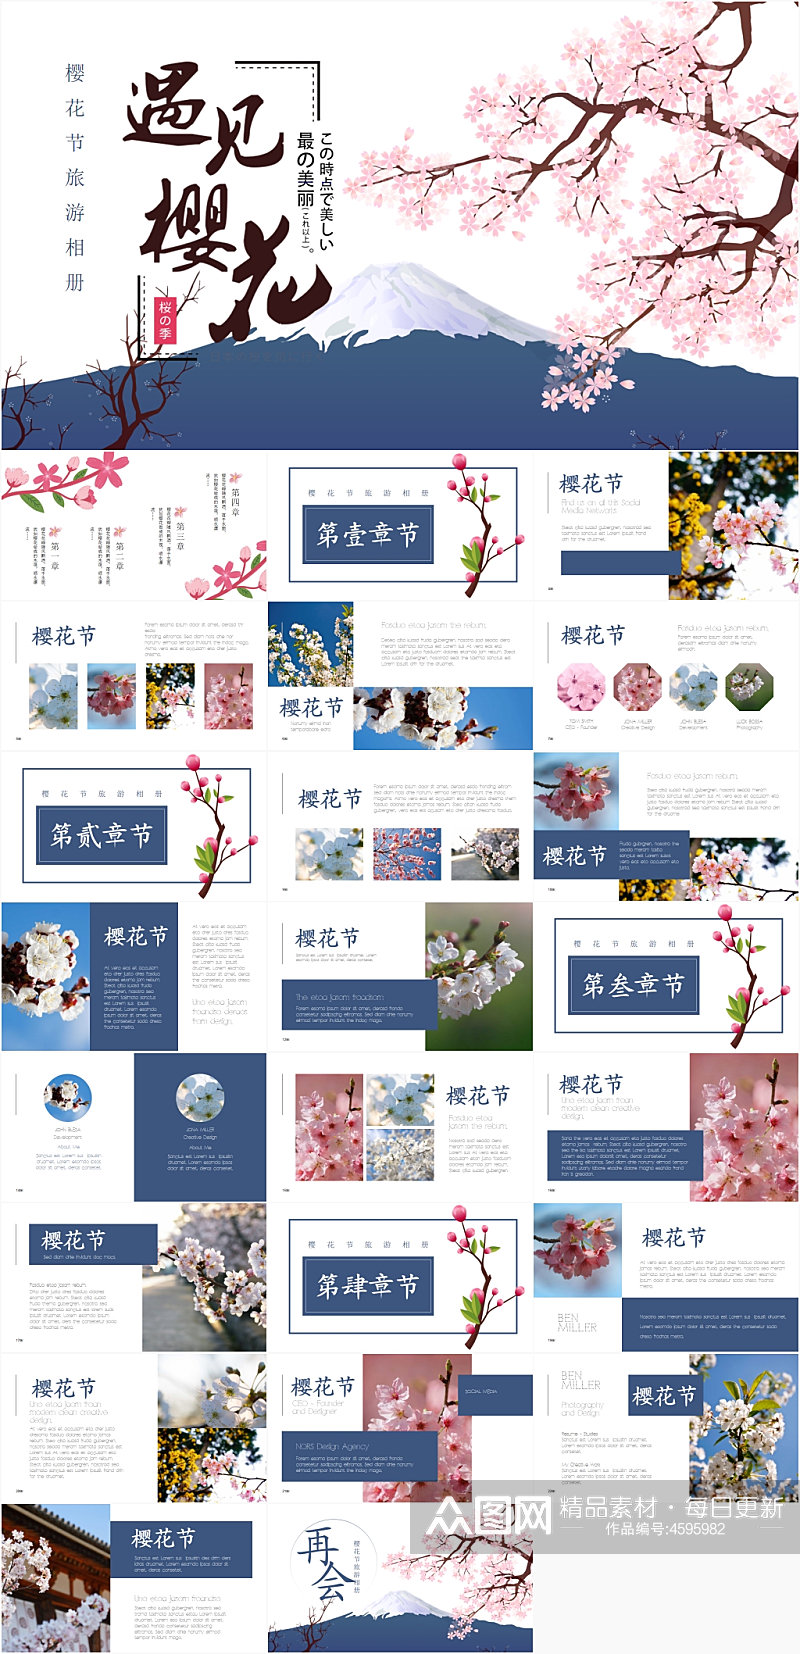 手绘风景樱花节旅游相册PPT模板素材